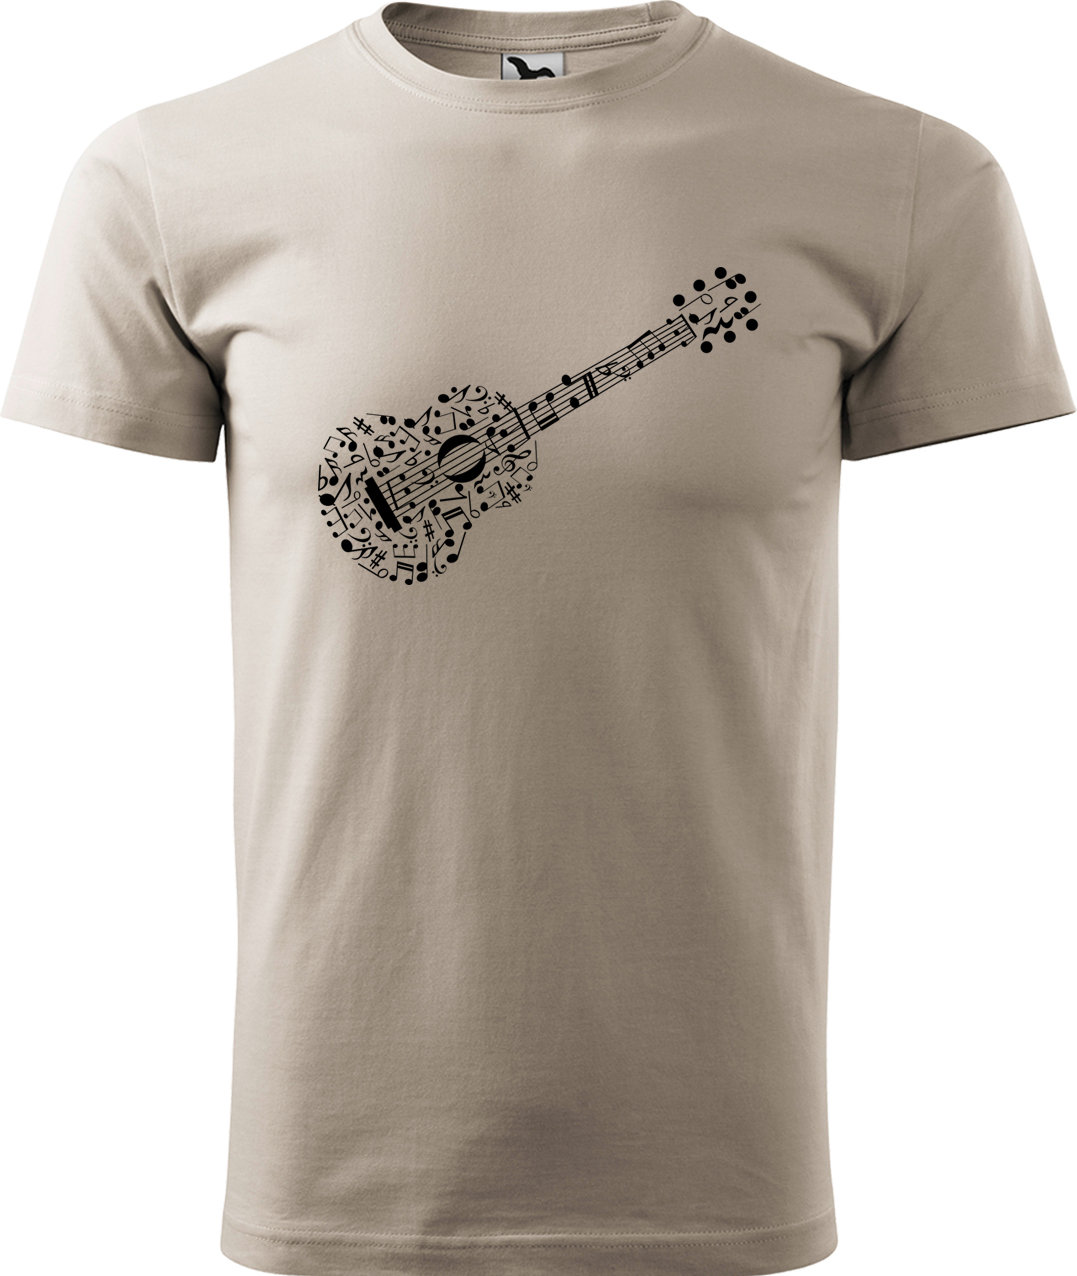 Pánské tričko s kytarou - Kytara z not Velikost: L, Barva: Ledově šedá (51), Střih: pánský